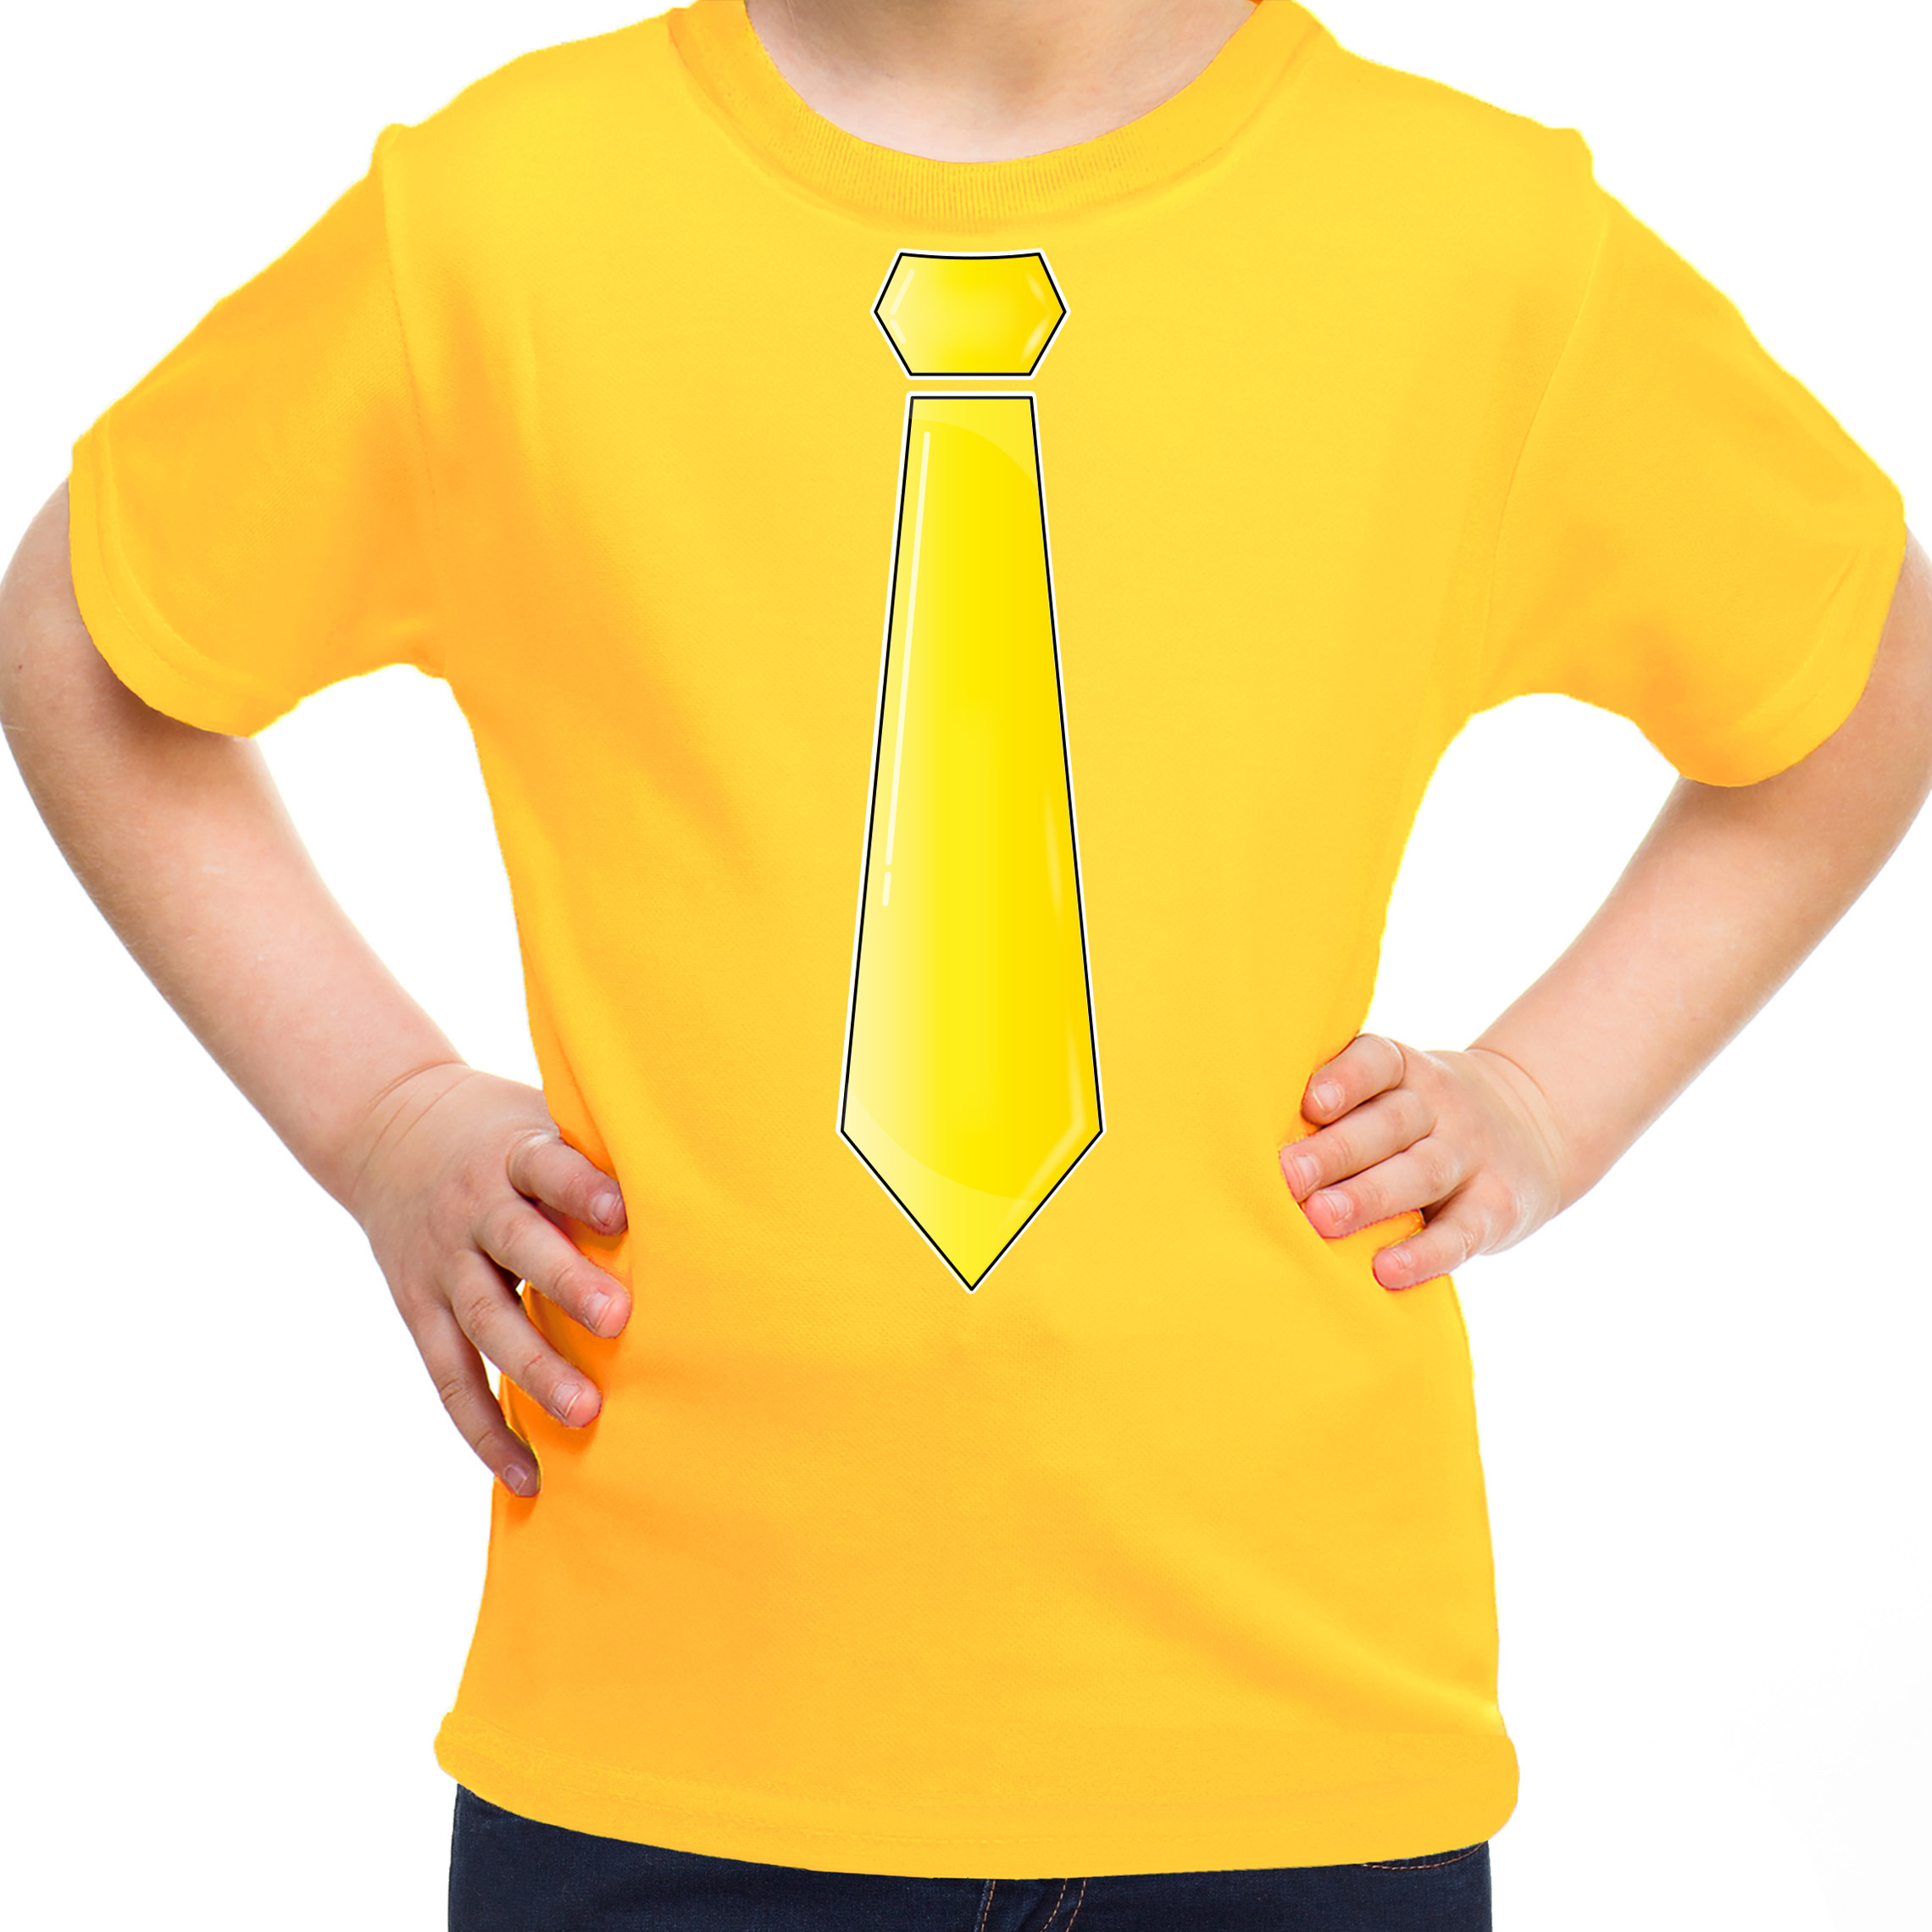 Verkleed t-shirt voor kinderen stropdas geel meisje carnaval-themafeest kostuum